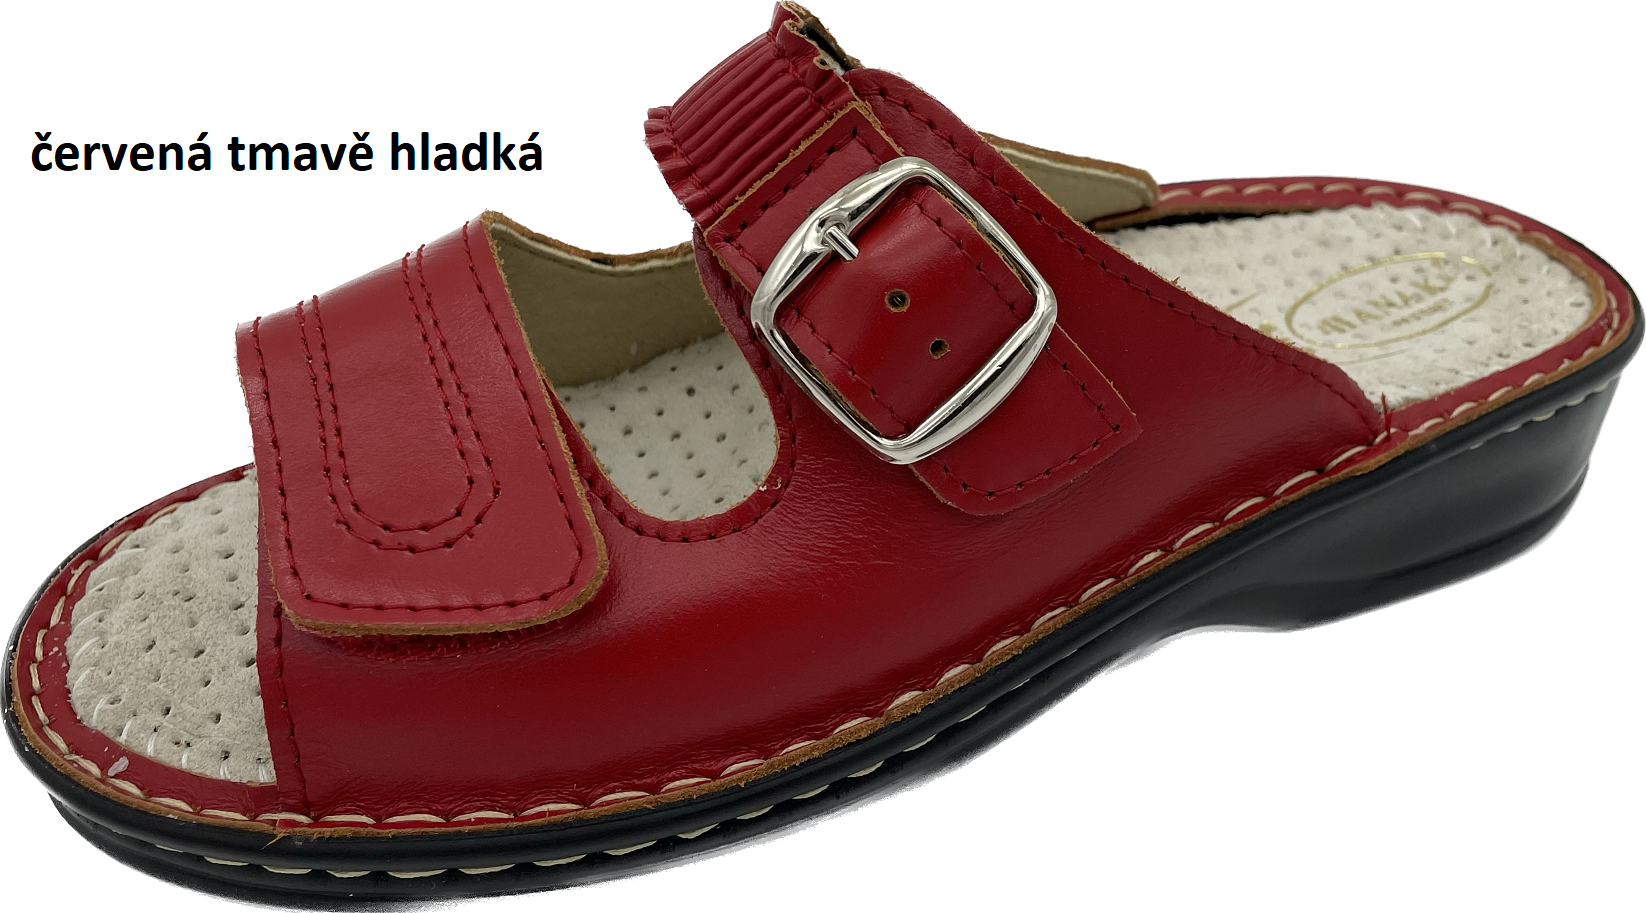 Boty Hanák vzor 305 - černá podešev Barva usně: červená hladká, Velikosti obuvi: 36